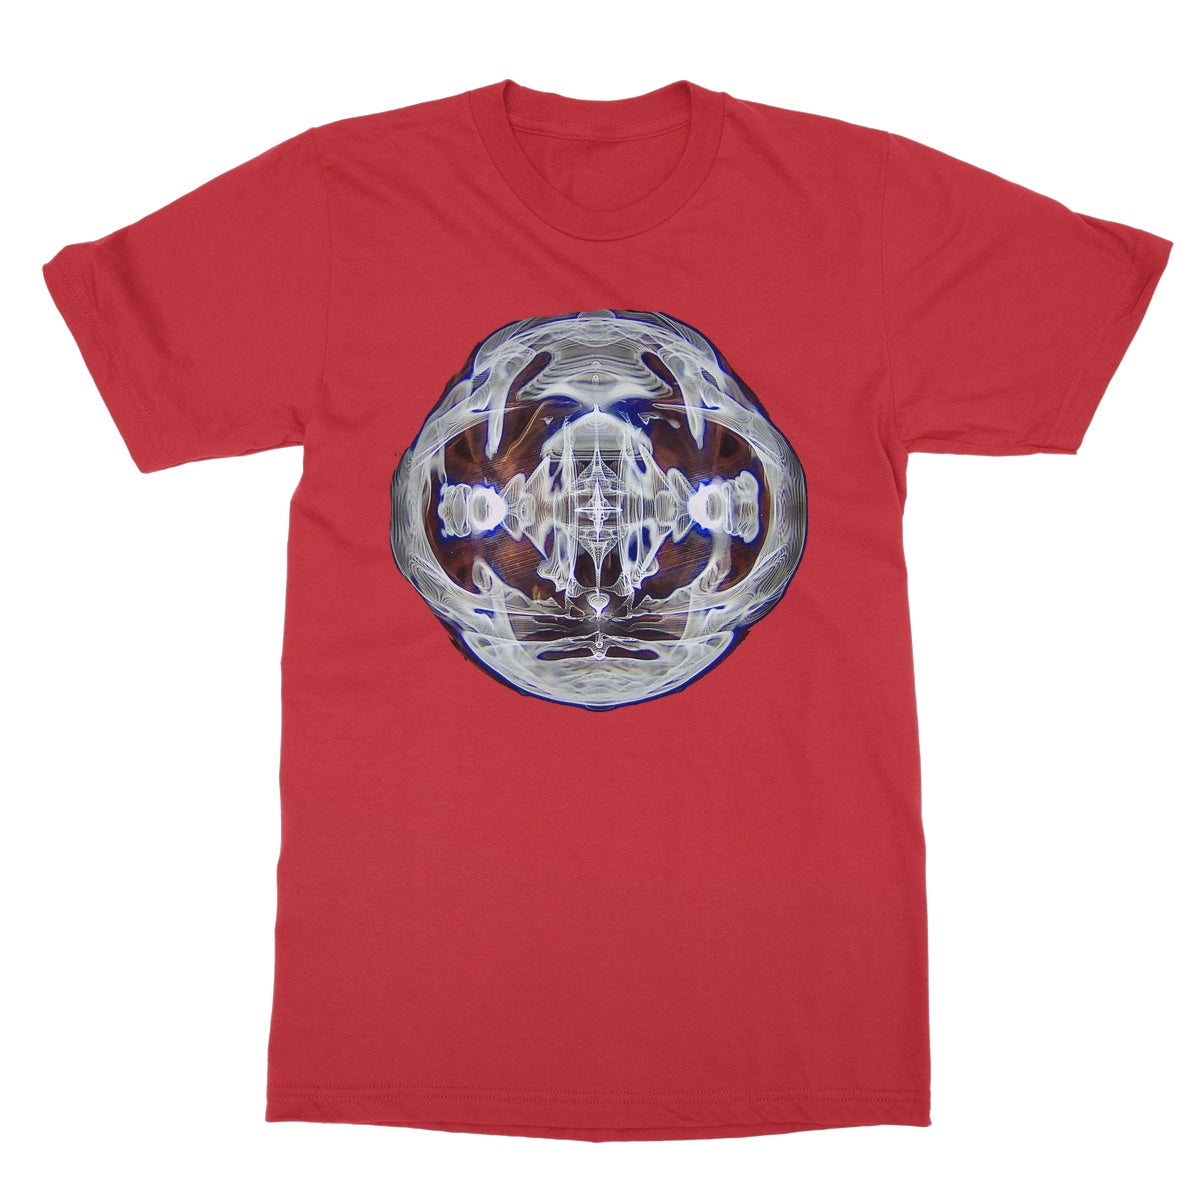 Cymatics 5 Softstyle T-Shirt